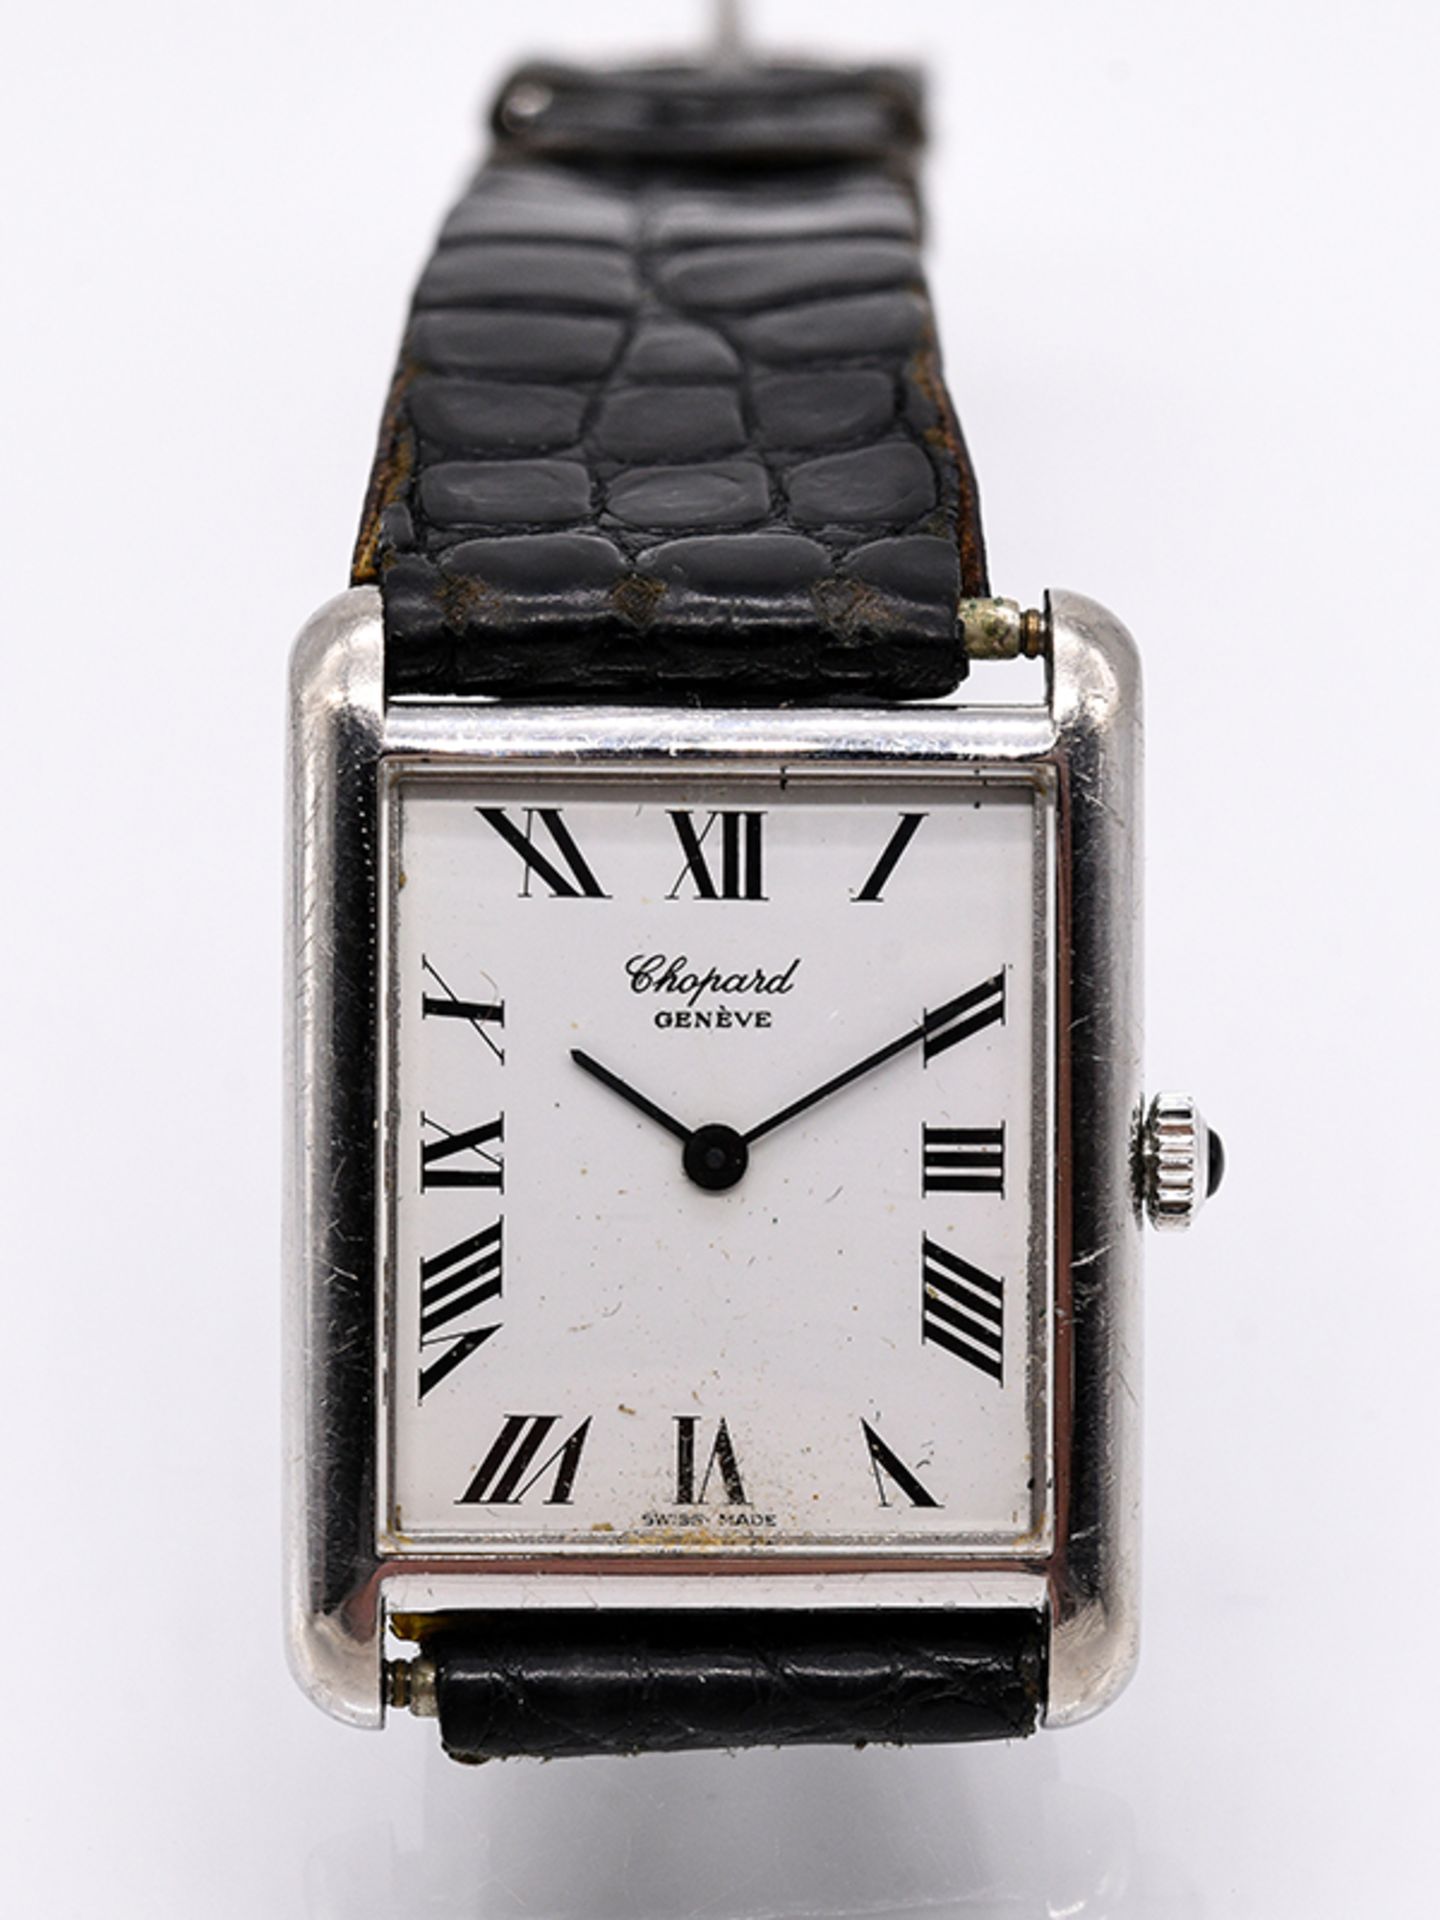 Armbanduhr "Chopard"; Genéve; 80- er Jahre.750/- Weißgold mit Lederarmband. Handaufzug. Rechteckiges